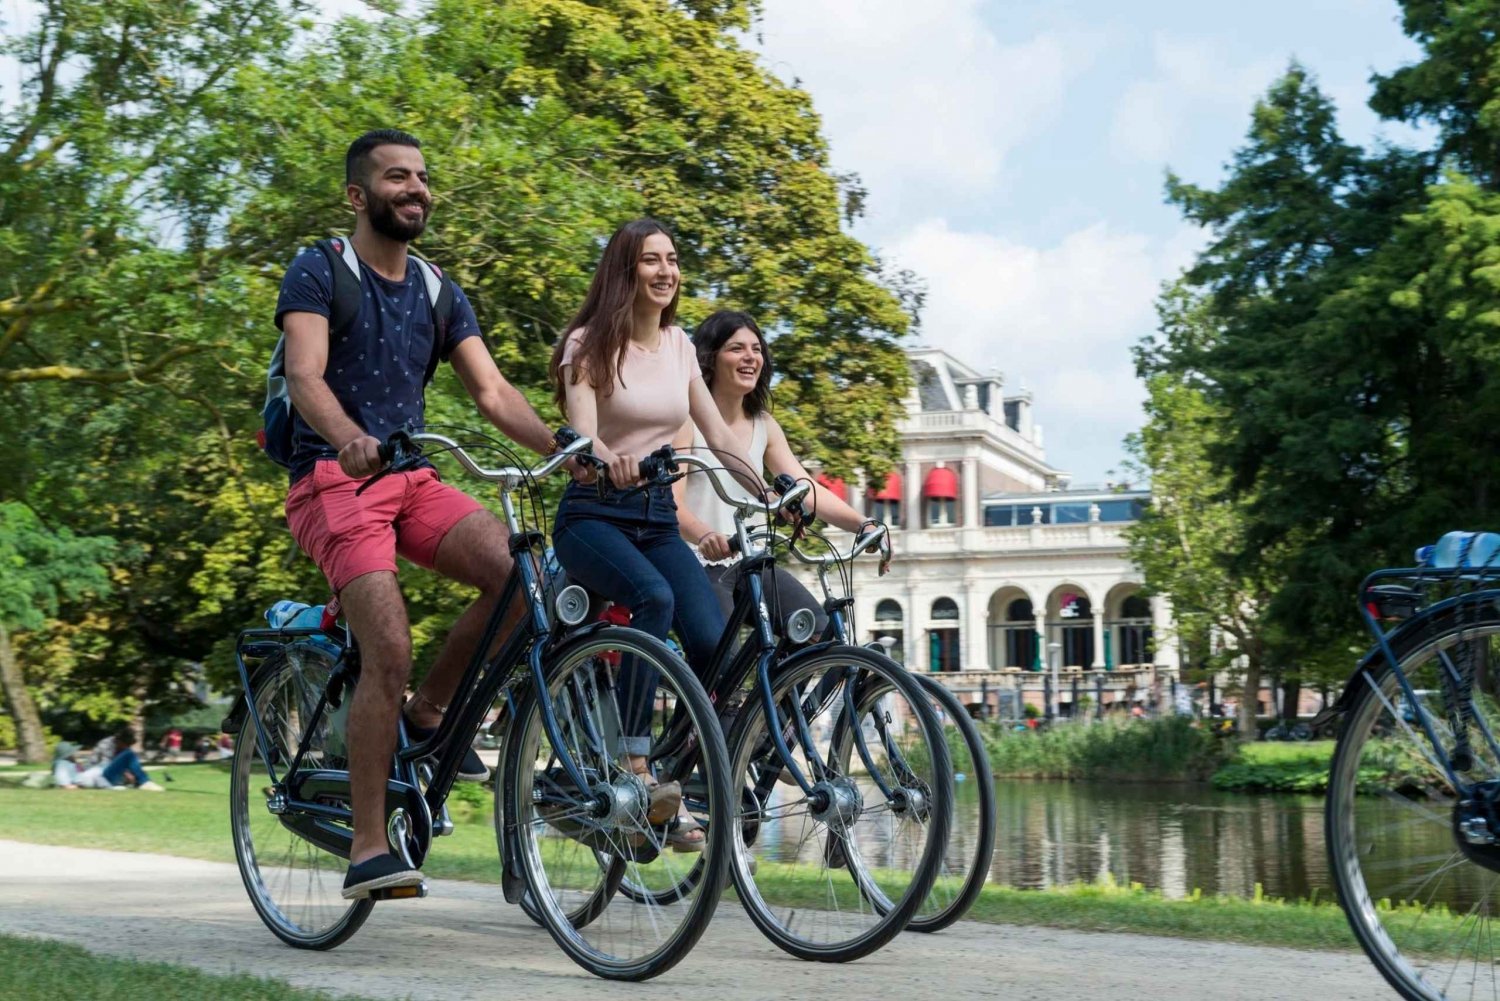 Huur een fiets in Amsterdam | 1, 2, 3+ uur